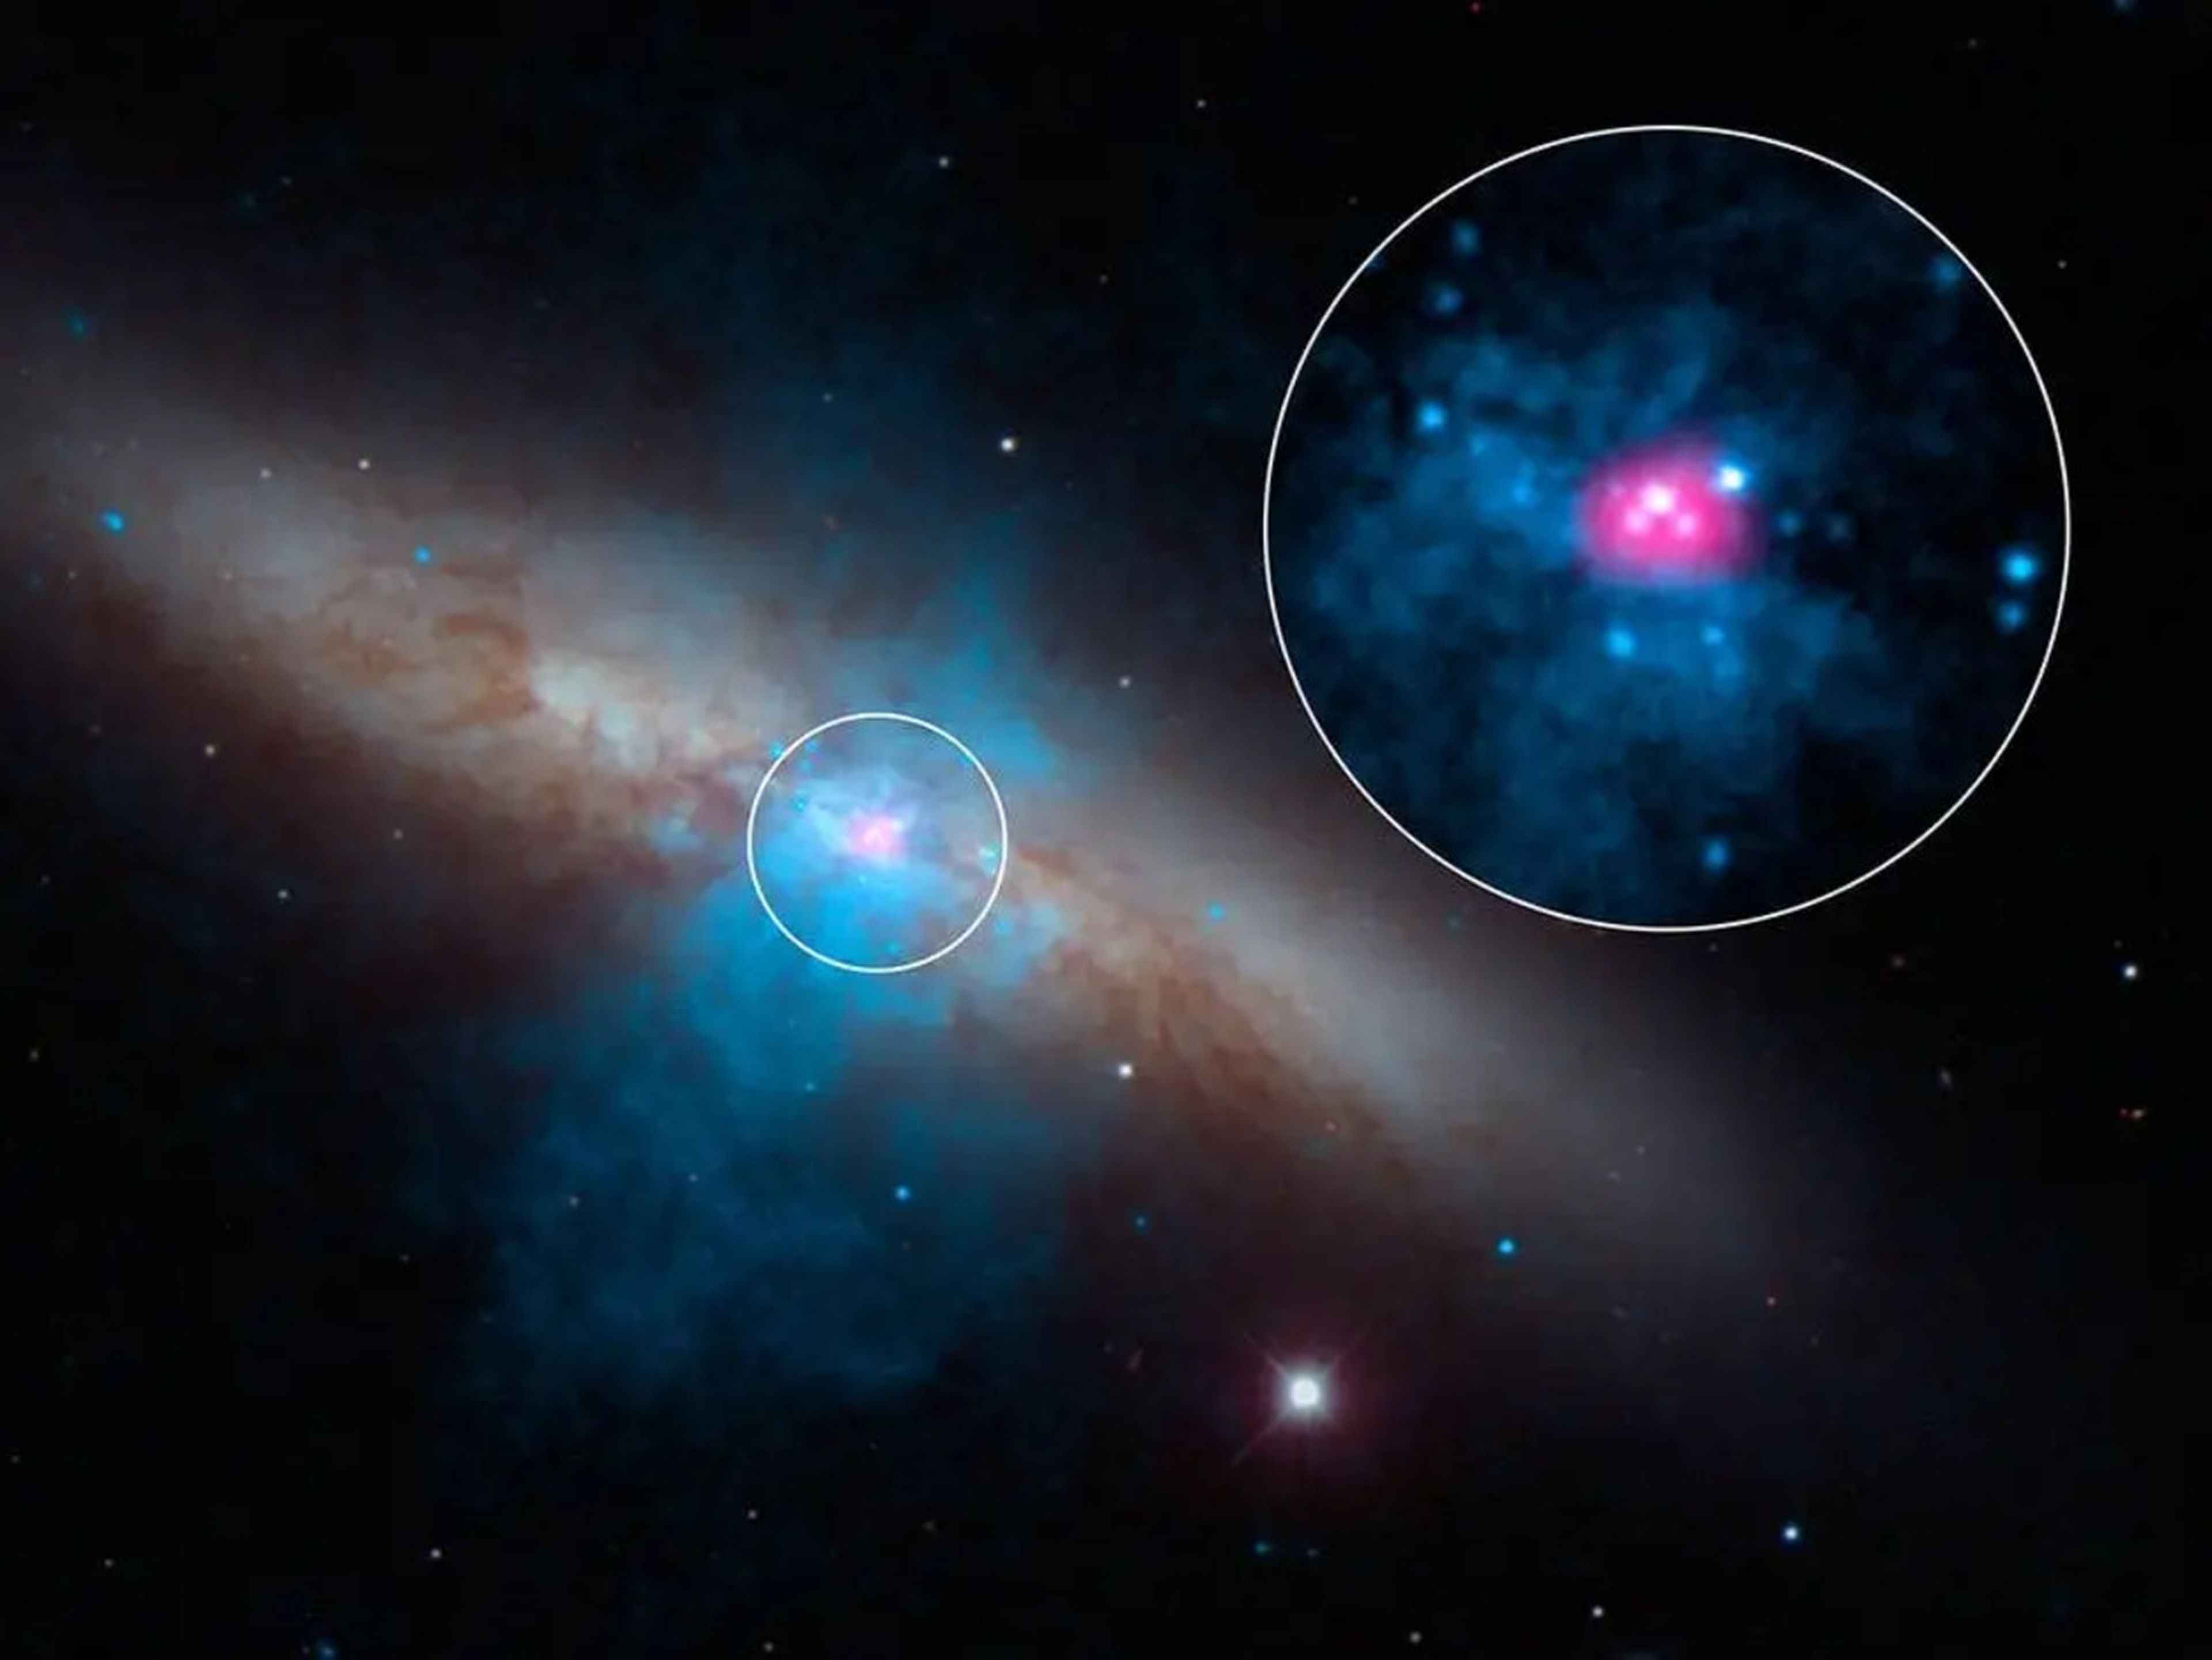 Una fuente ultraluminosa de rayos X llamada M82 X-2 se muestra aquí dentro de la galaxia Messier 82 en esta imagen pseudocoloreada y en luz visible.